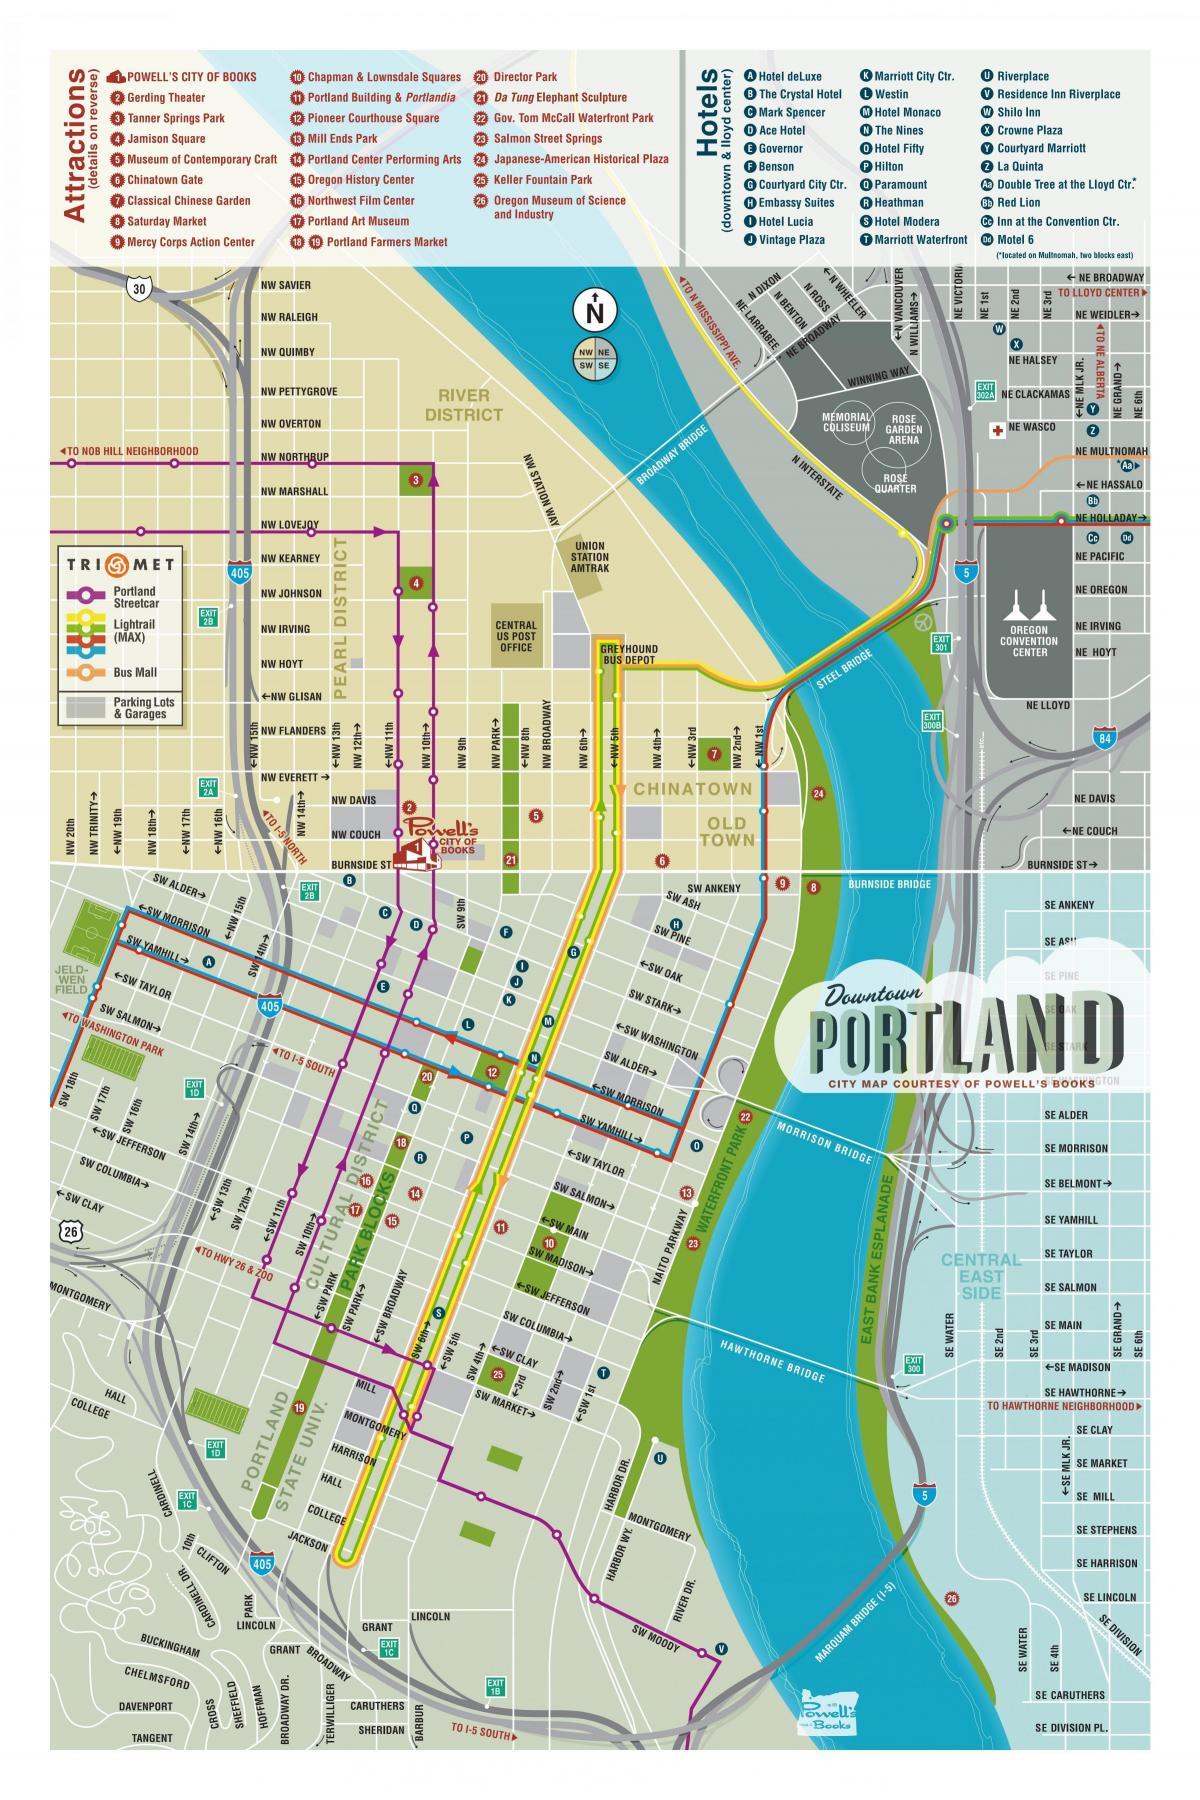 Portland carte de visites